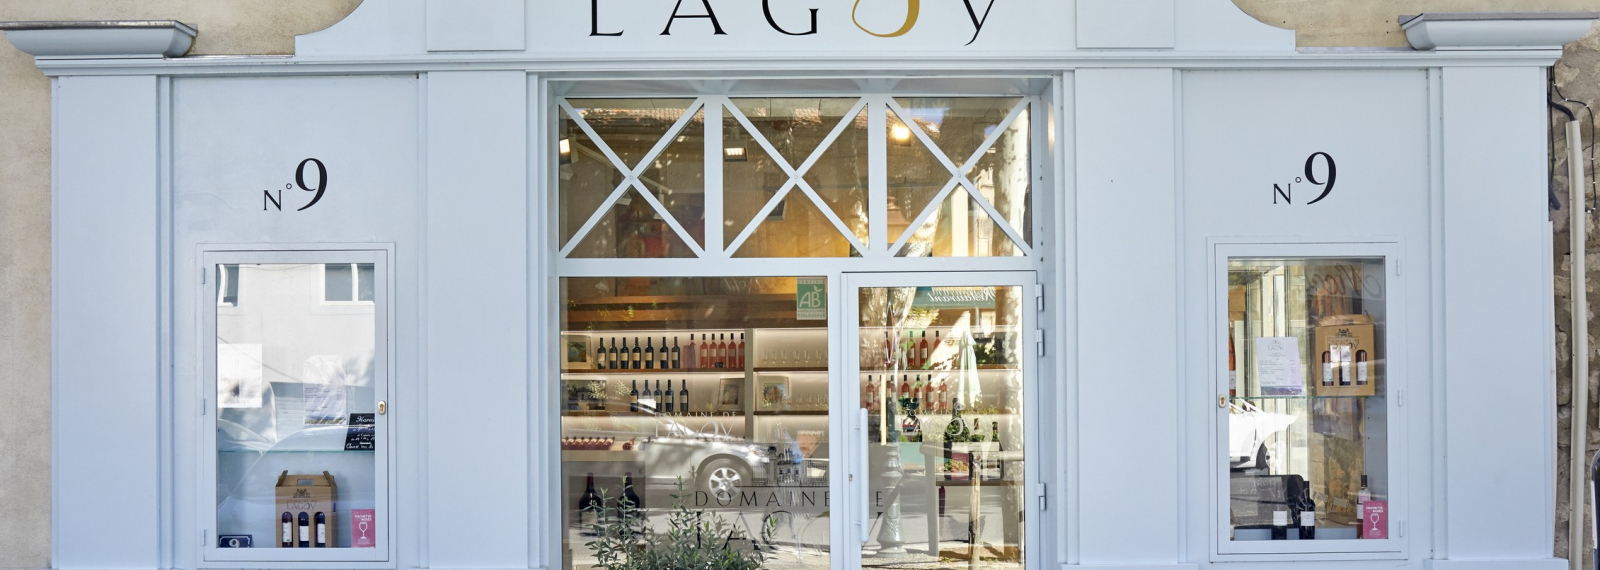 Der Shop von Domaine de Lagoy